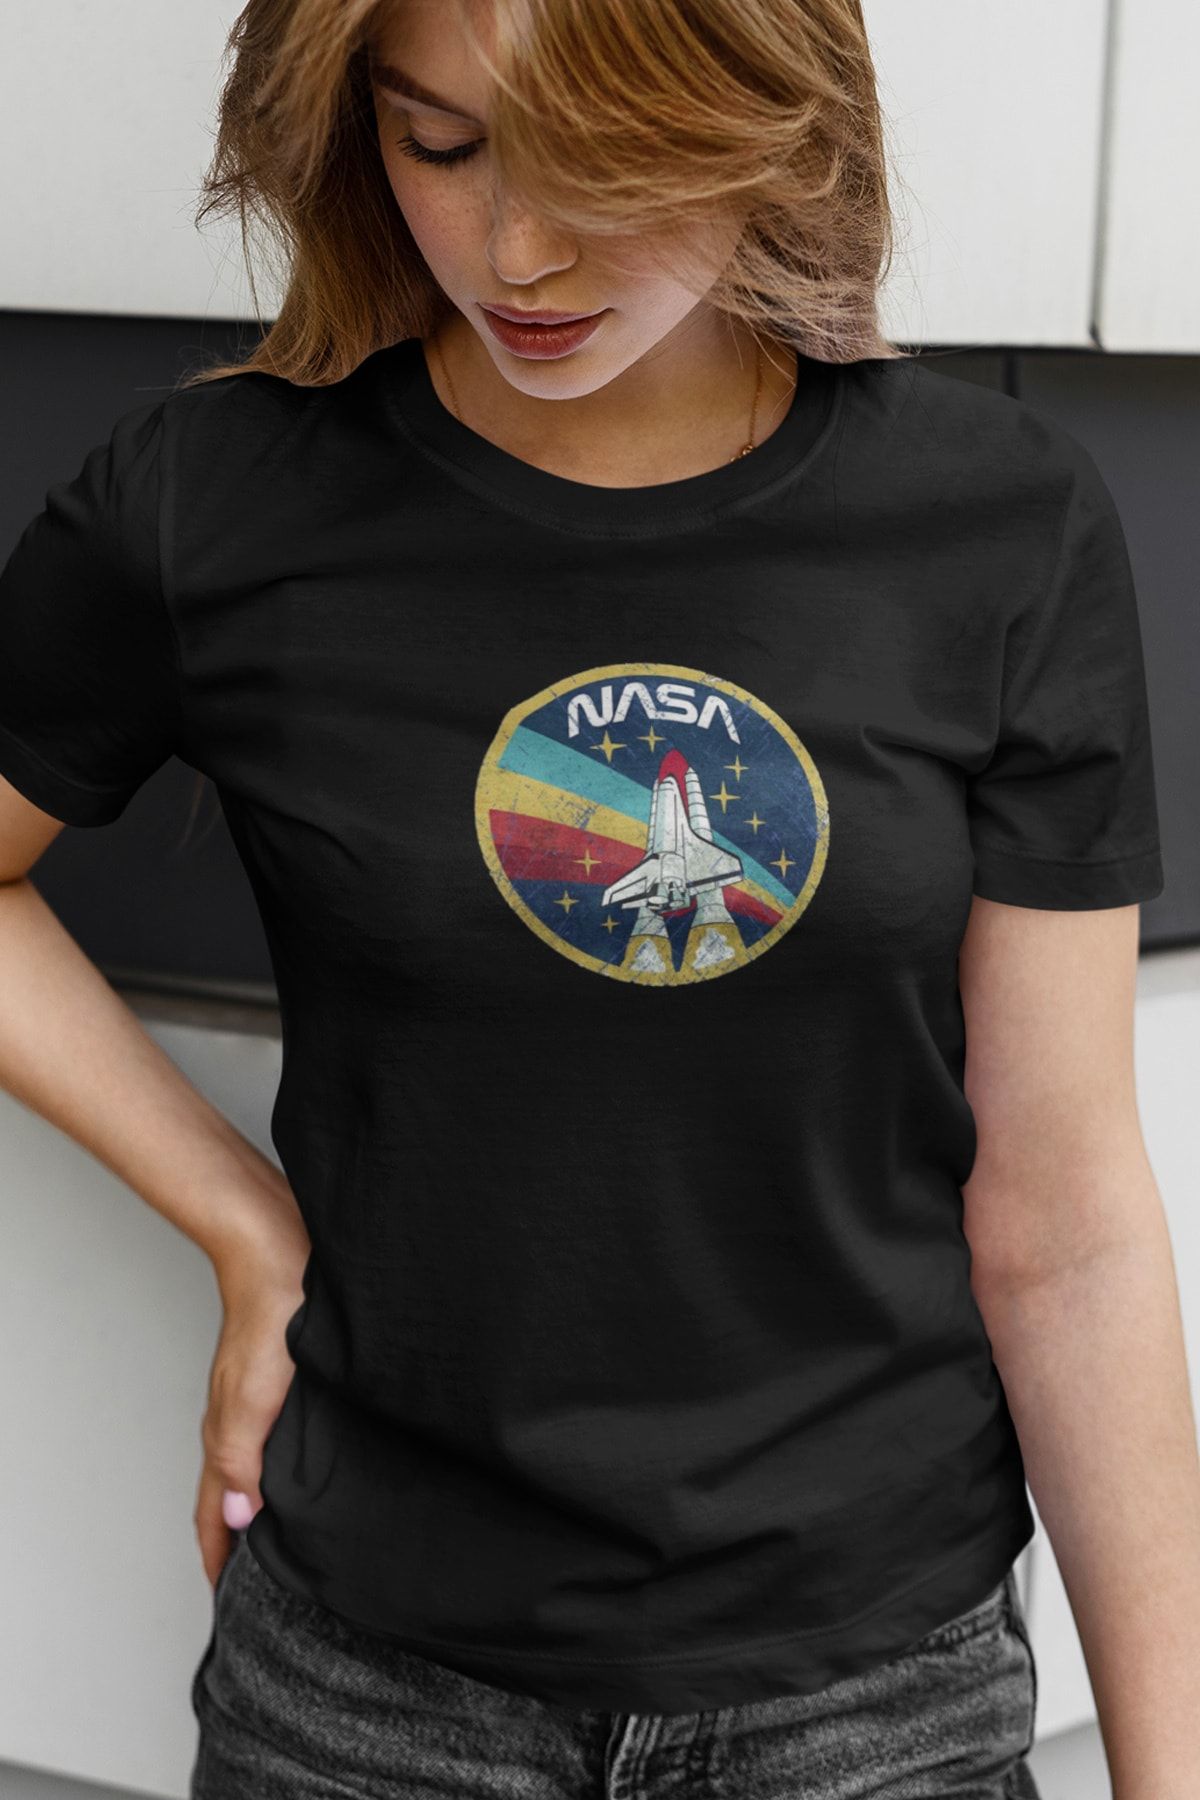 Kio Tasarım Tişört Vintage Uzay Mekiği Baskılı Kadın Siyah Pamuklu T-shirt